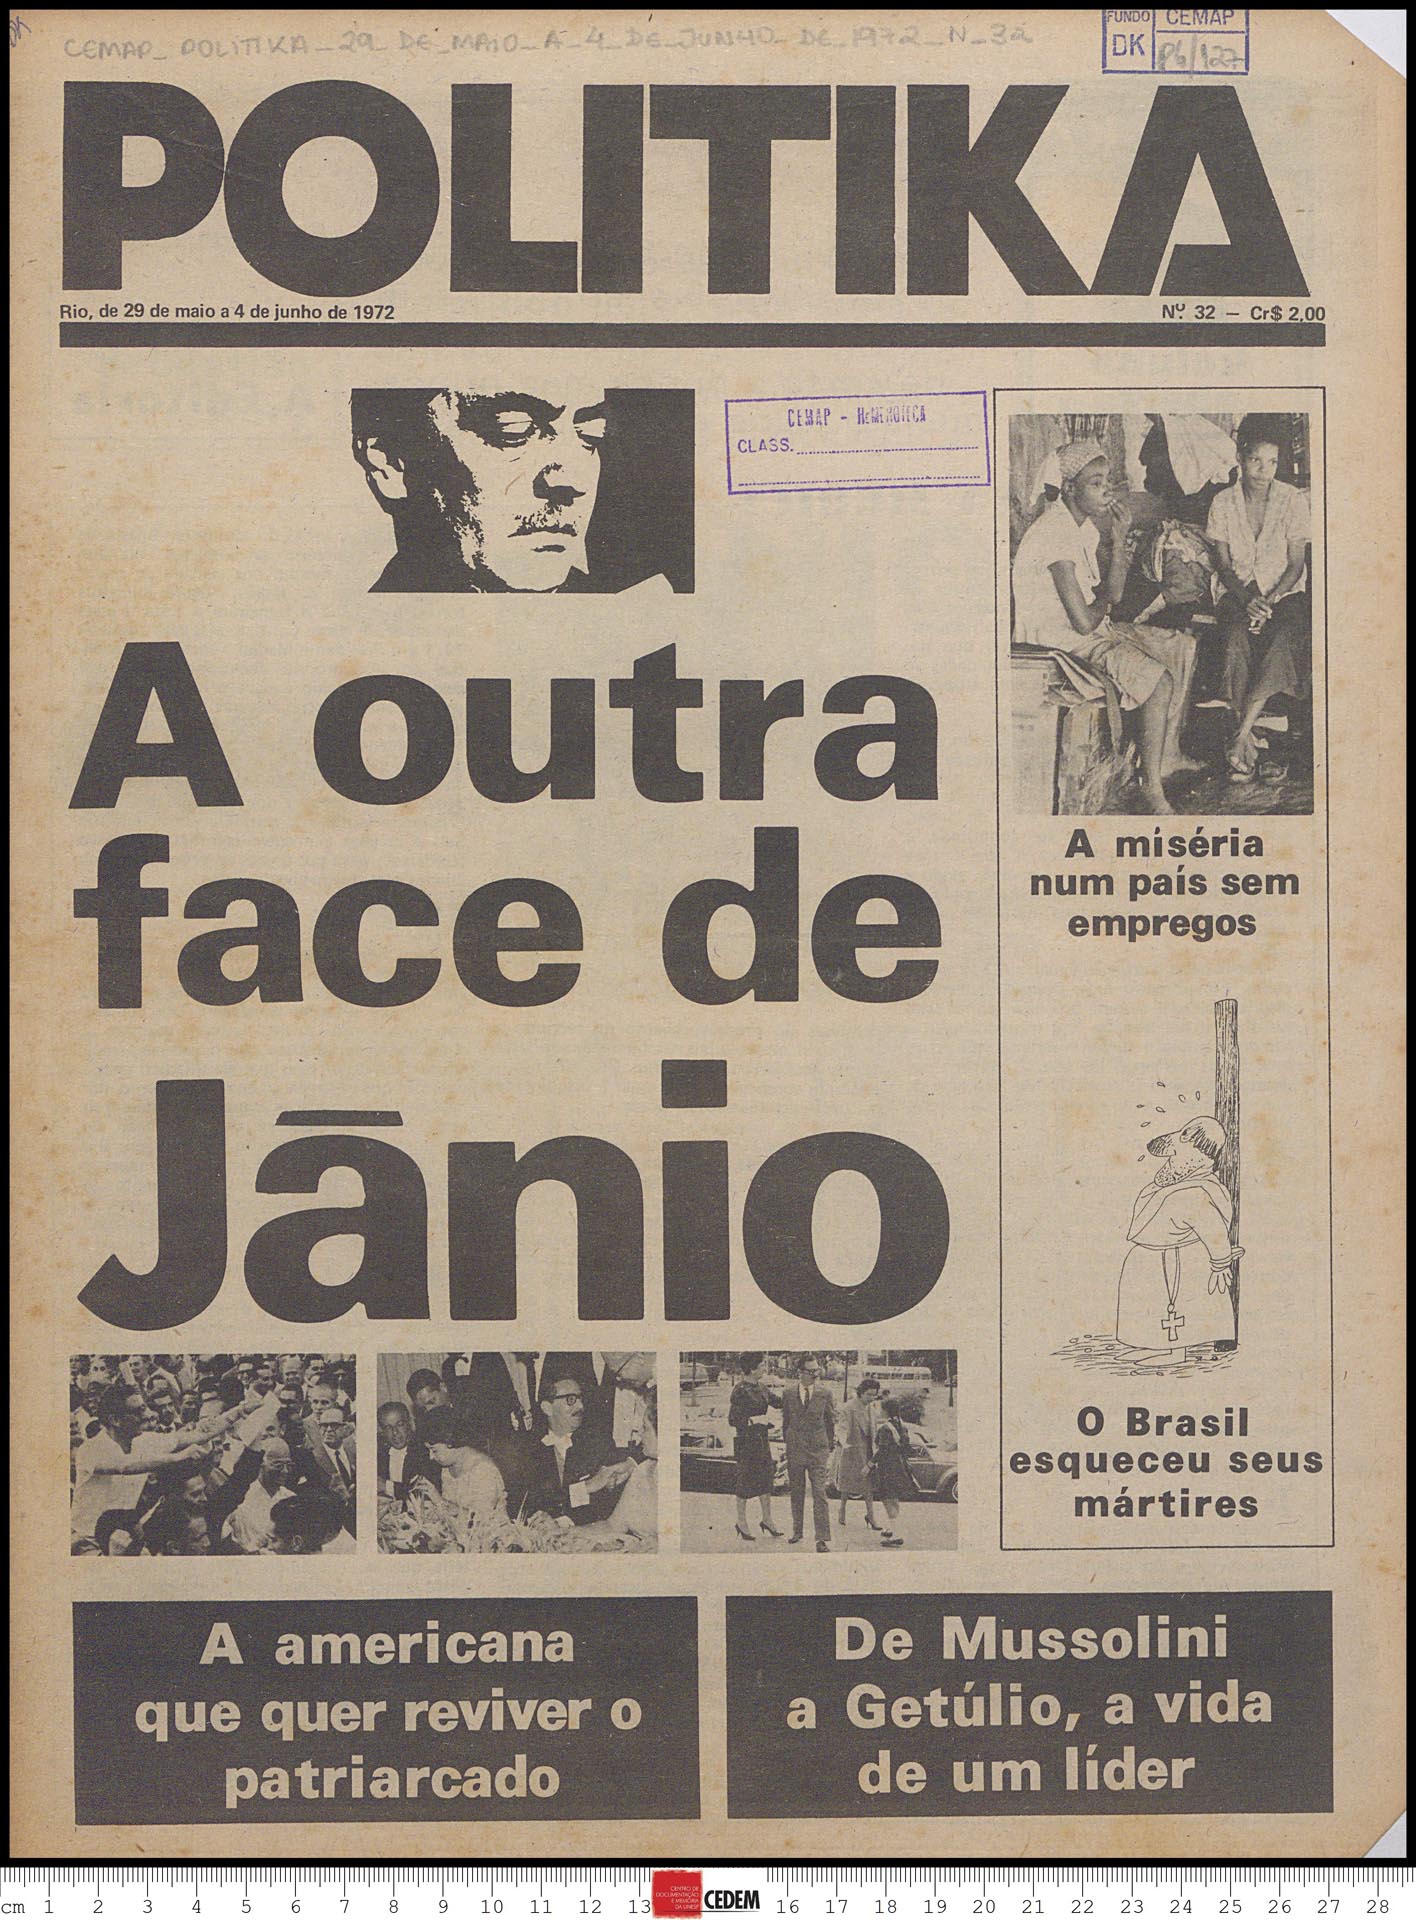 Politika - 32 - 29 de mai. a 4 de jun. 1972